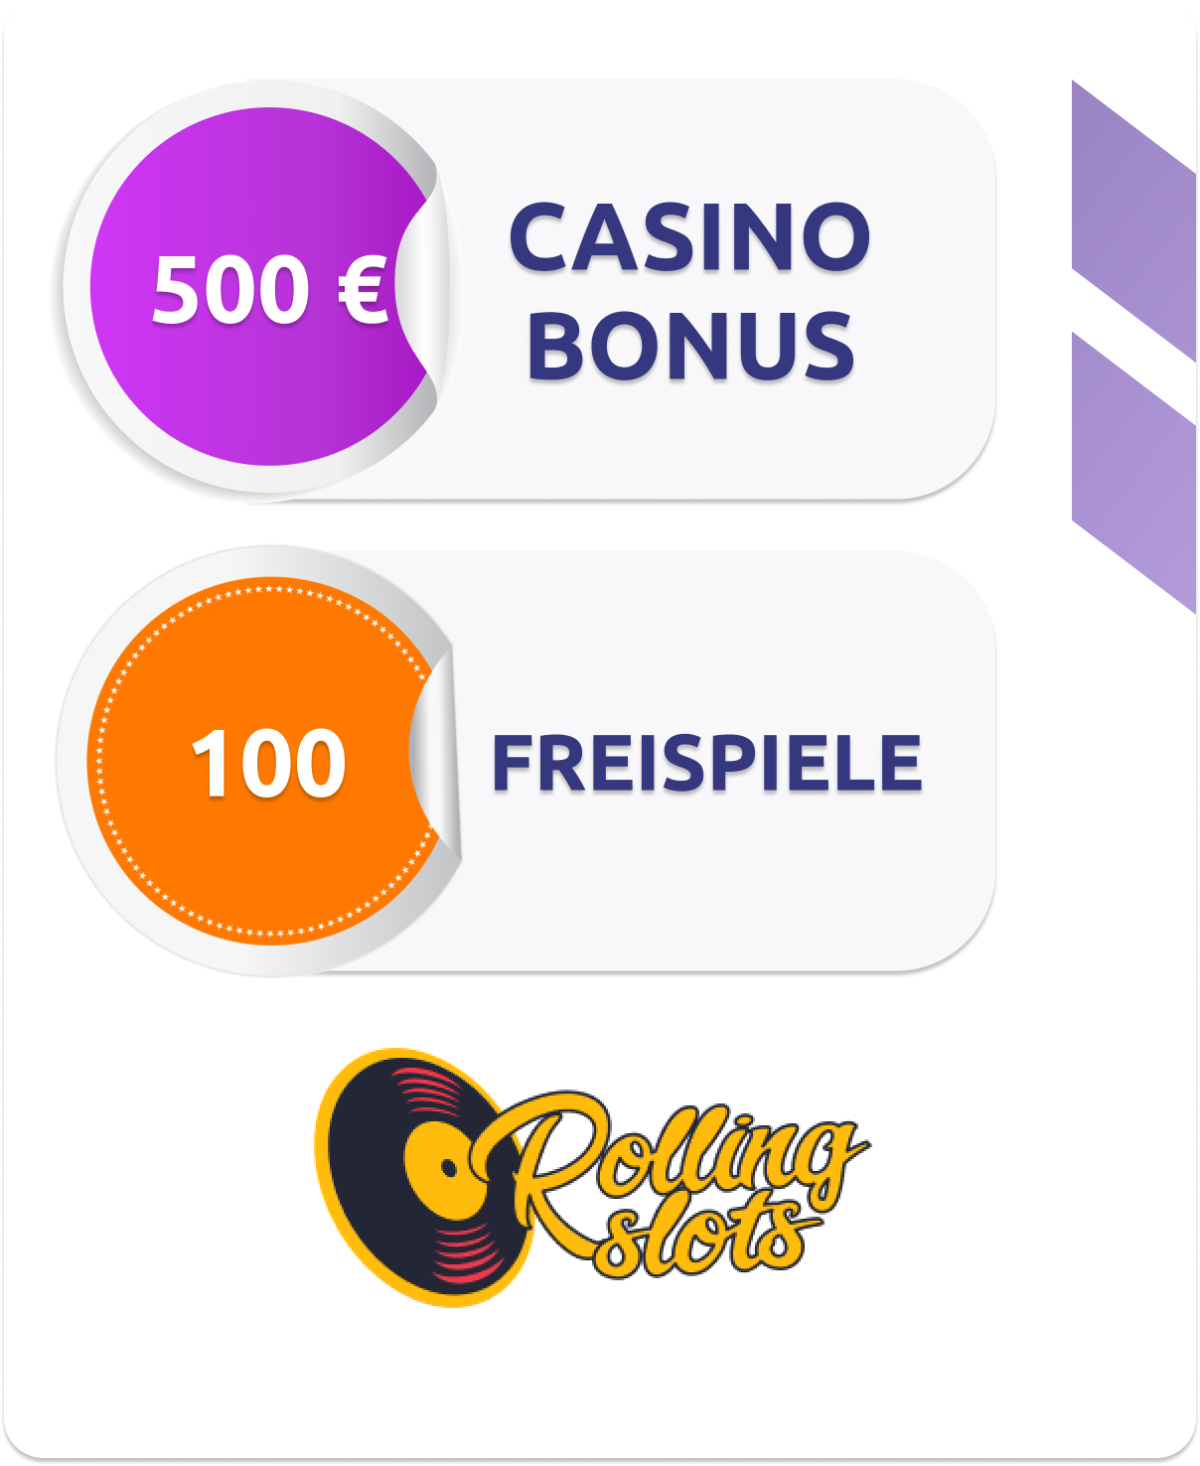 Sichere dir 500 € Casinobonus und 100 Freispiele bei Rollingslots!